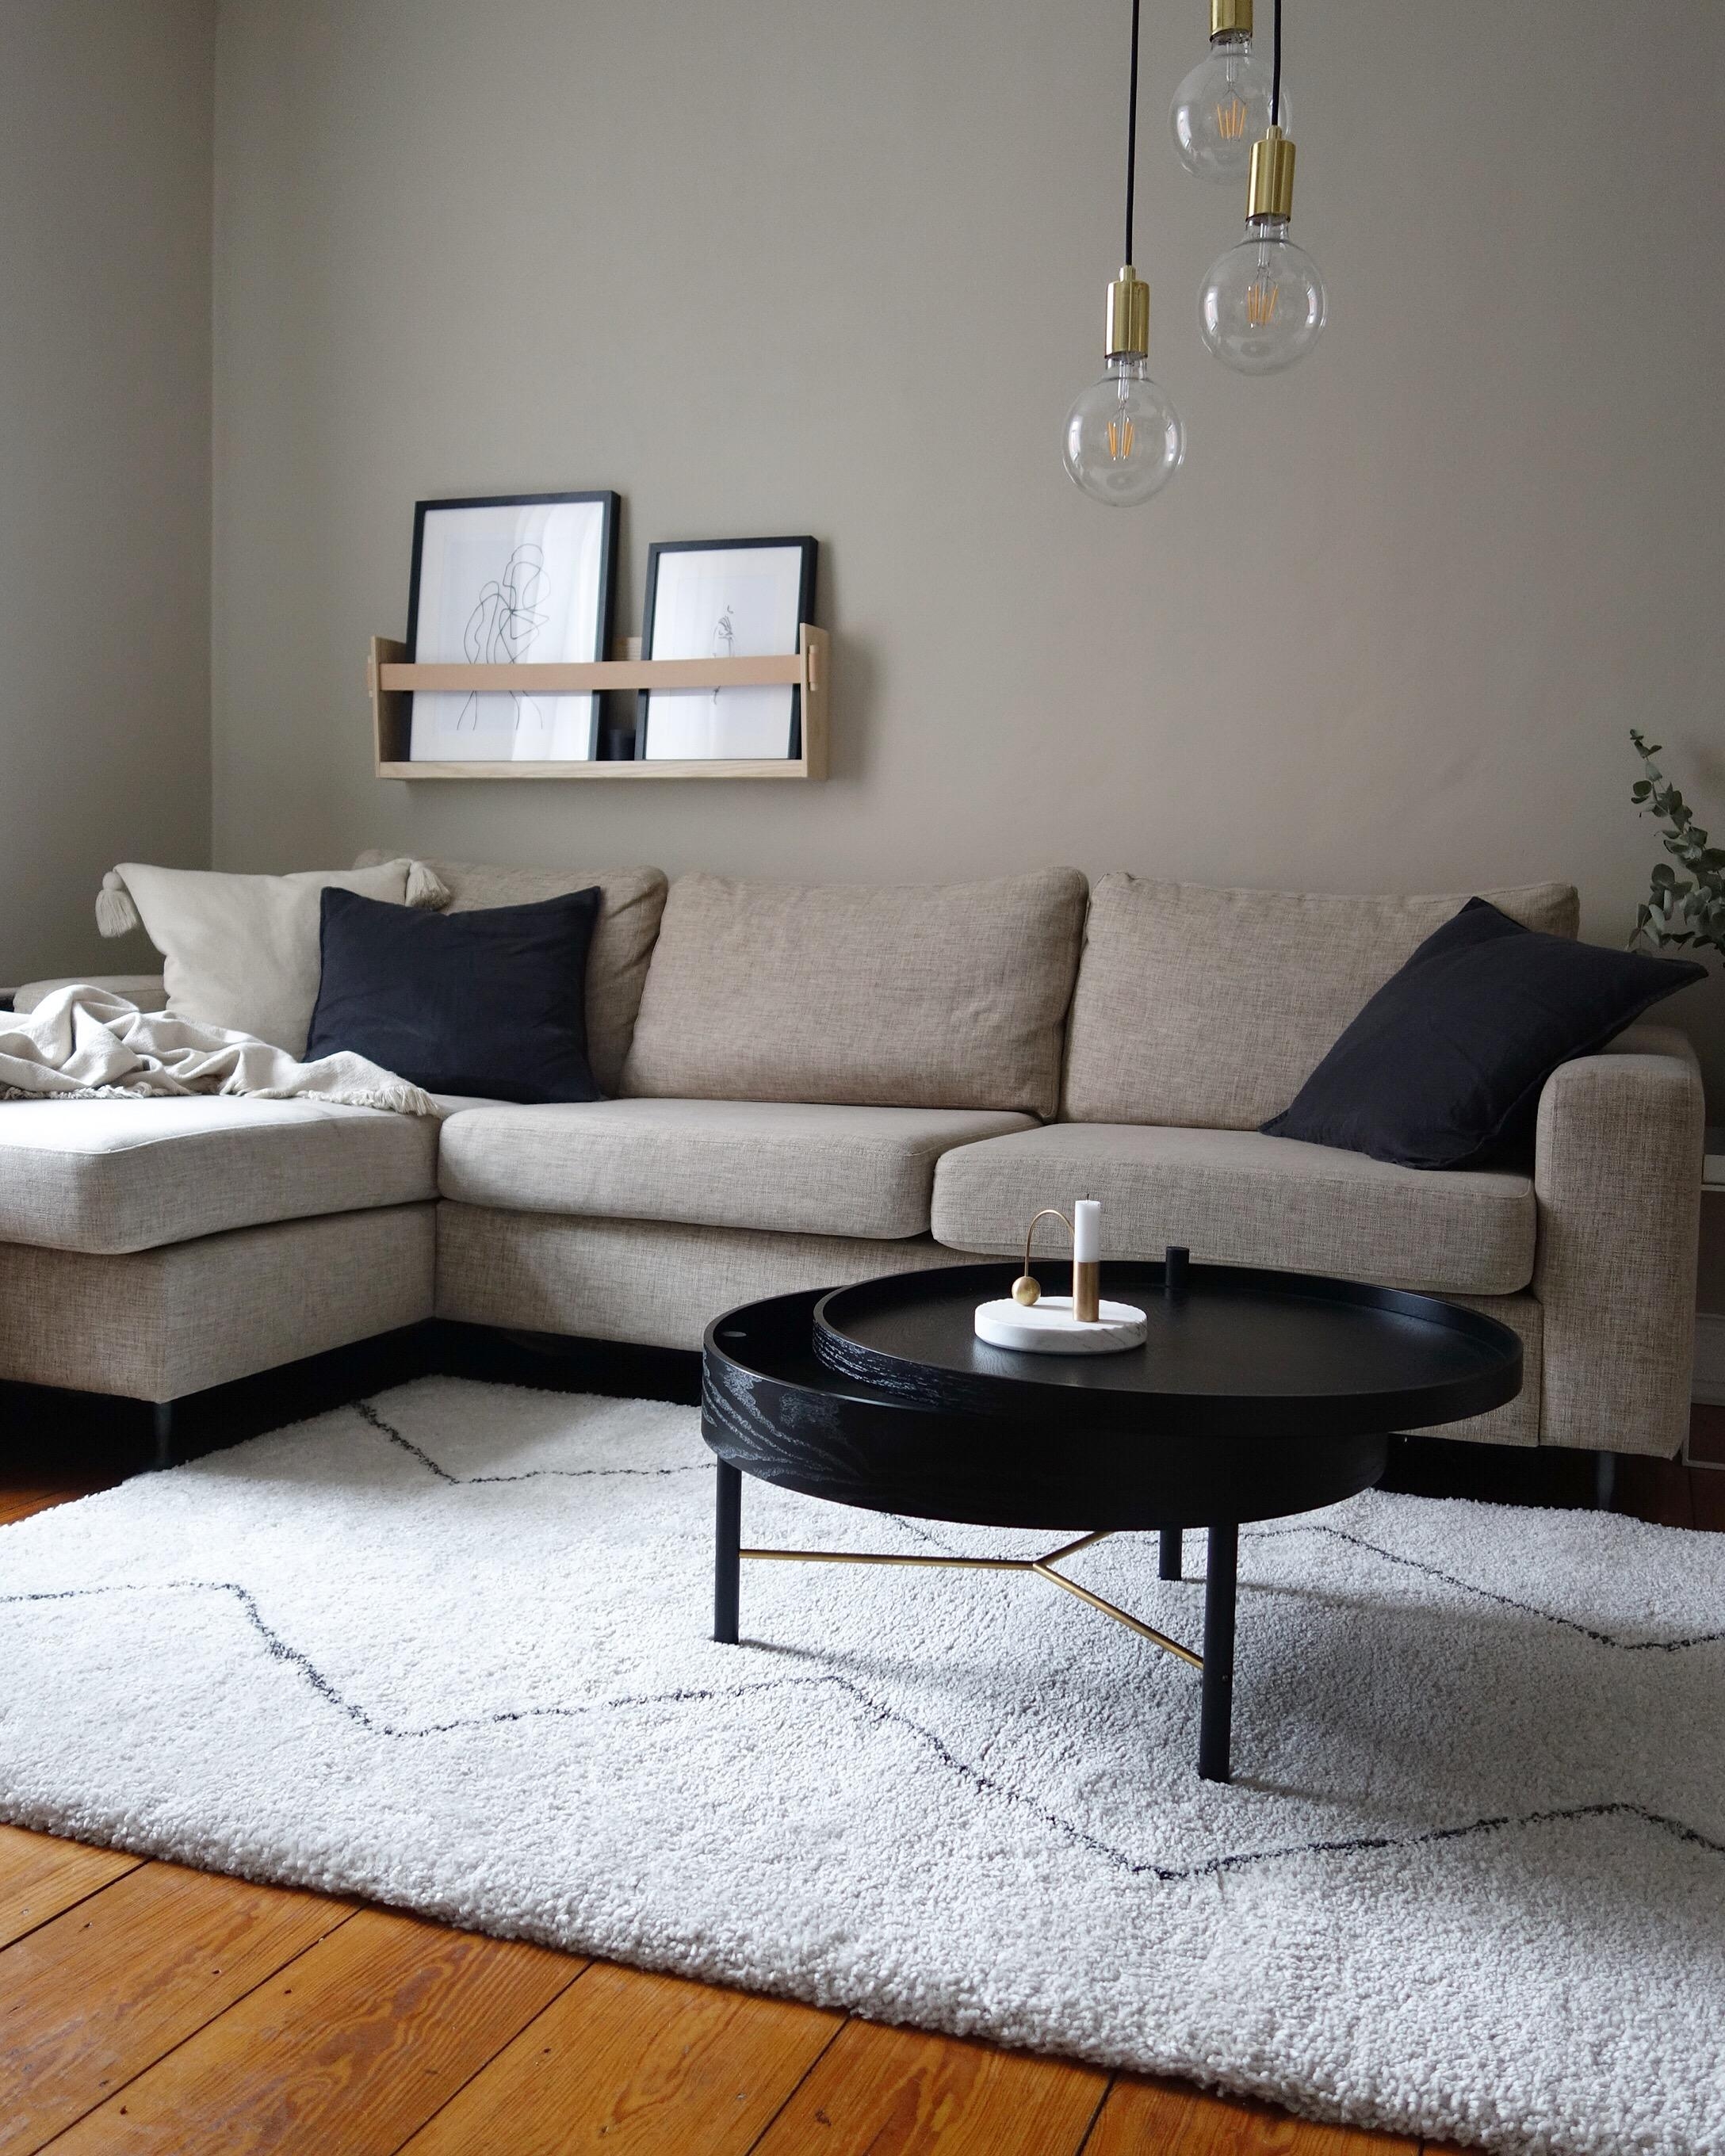 Der beste Platz für einen regnerischen Feierabend- Couch, ich freue mich auf dich!! #wohnzimmer #couch #interior